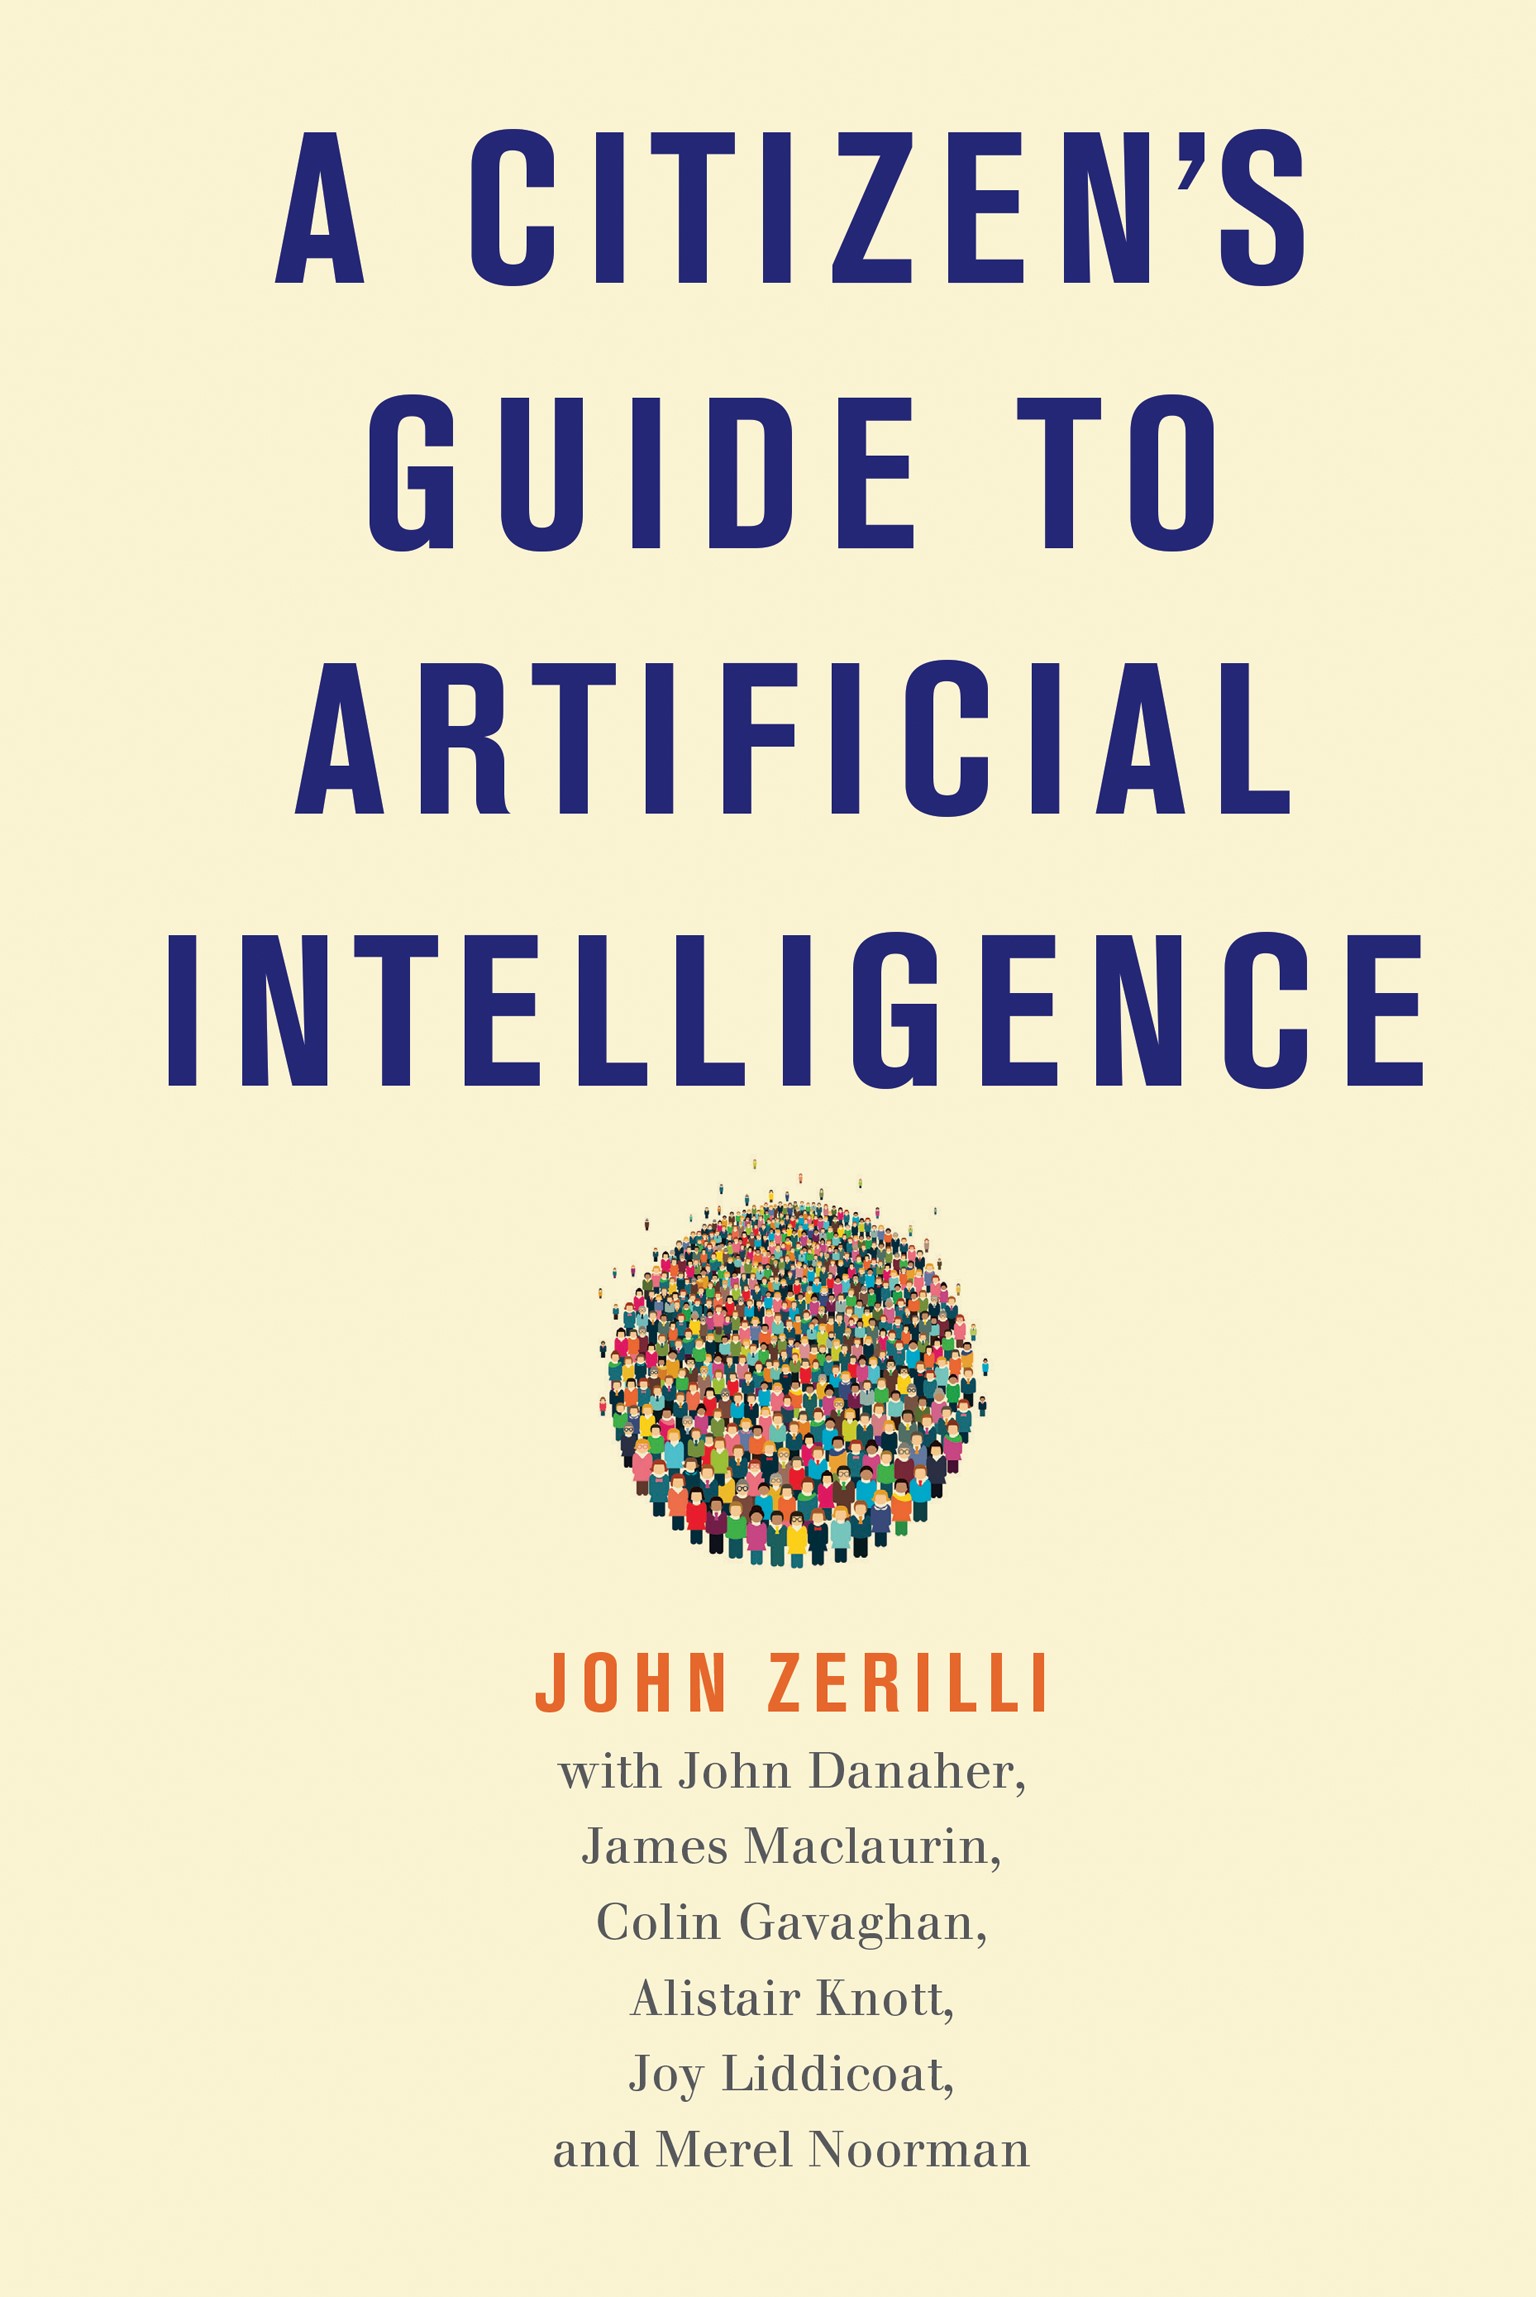 Cover of Zerilli et al's book Citizen's Guide to AI